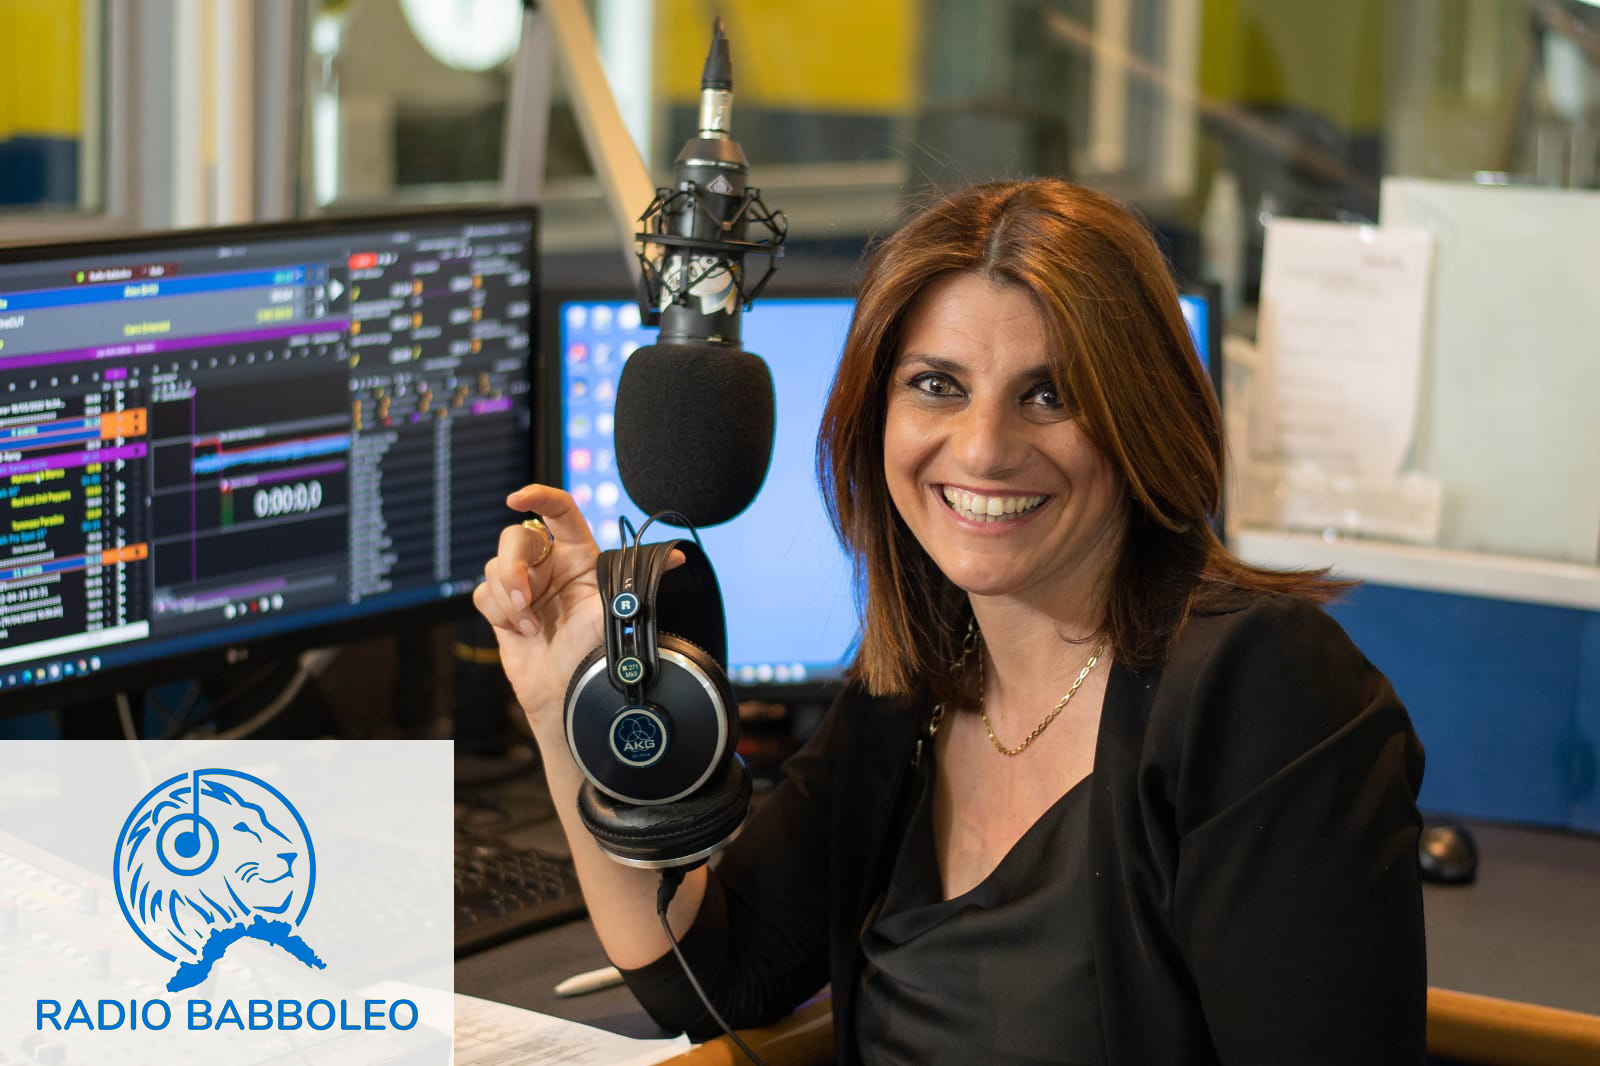 Paola Servente in studio a Radio Babboleo